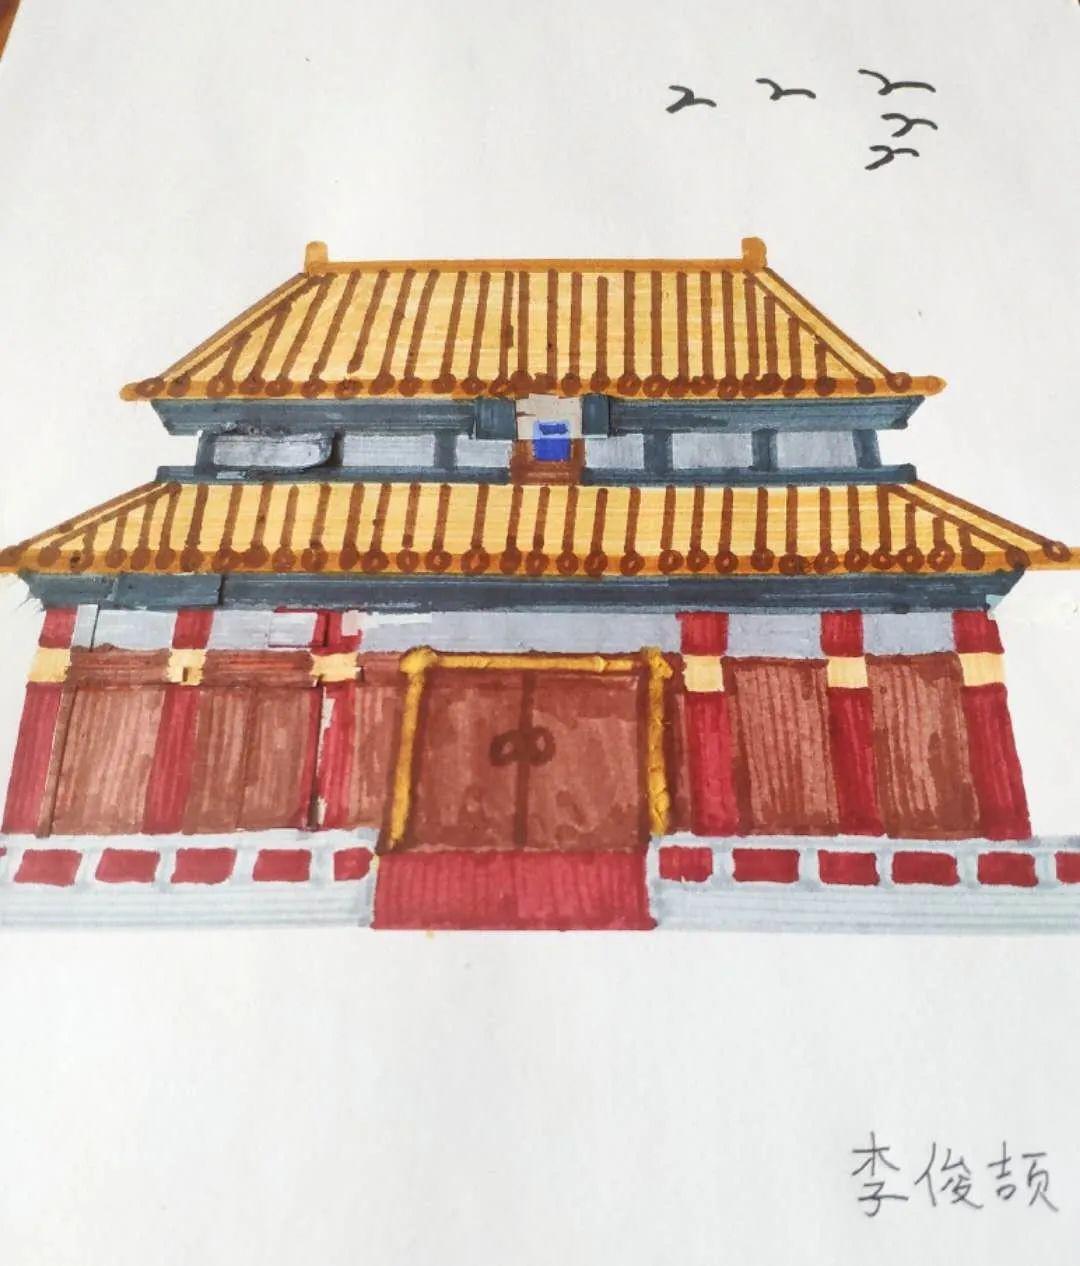 作品二年级学生绘画作品一年级学生绘画作品看了孩子们画的故宫建筑